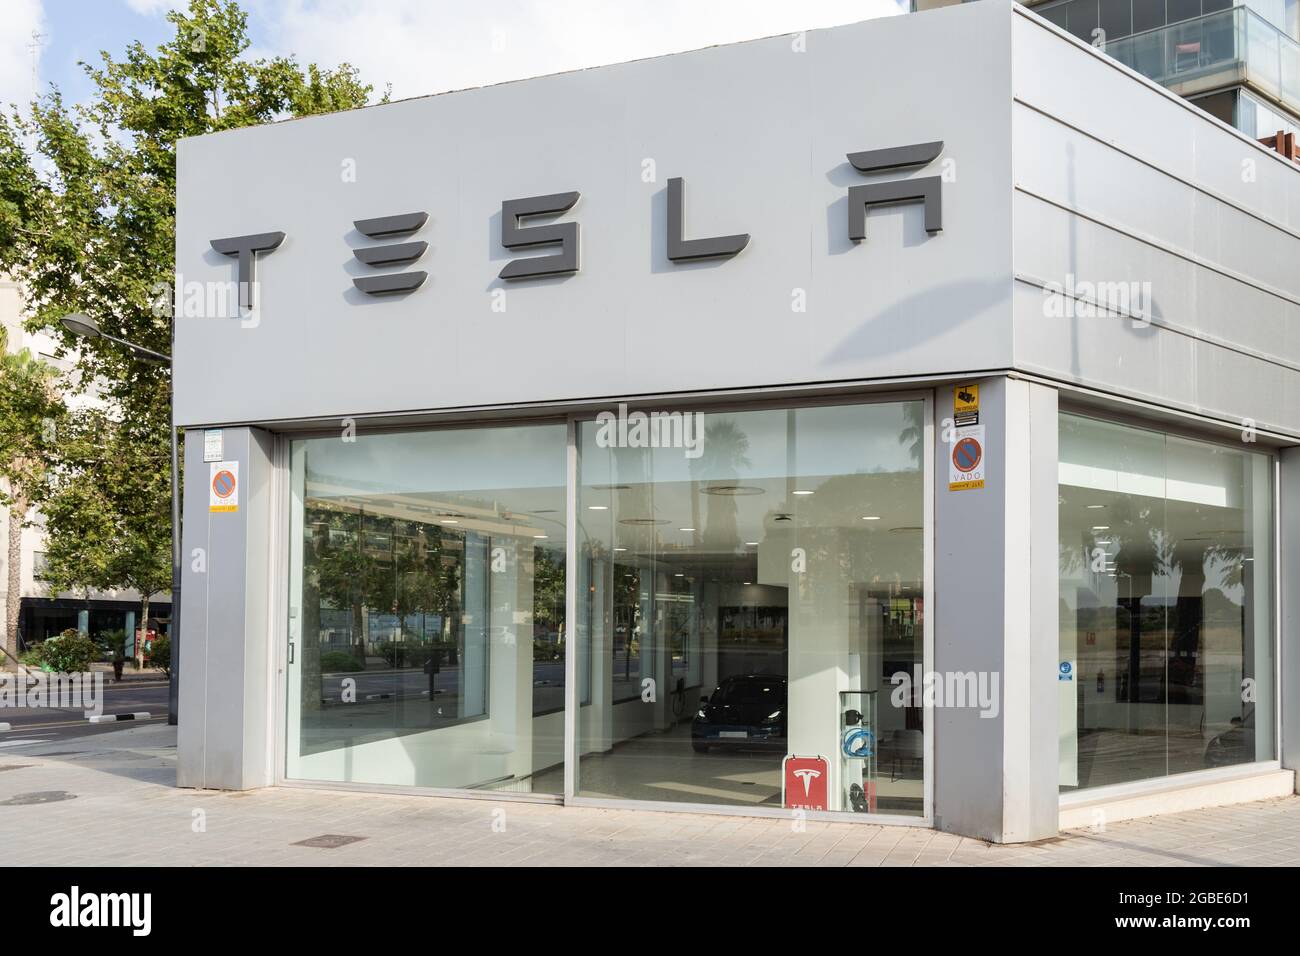 Valencia, Spagna - 24 luglio 2021: Negozio Tesla. Tesla è un'azienda americana specializzata in automobili elettriche, stoccaggio di energia e produzione di pannelli solari Foto Stock